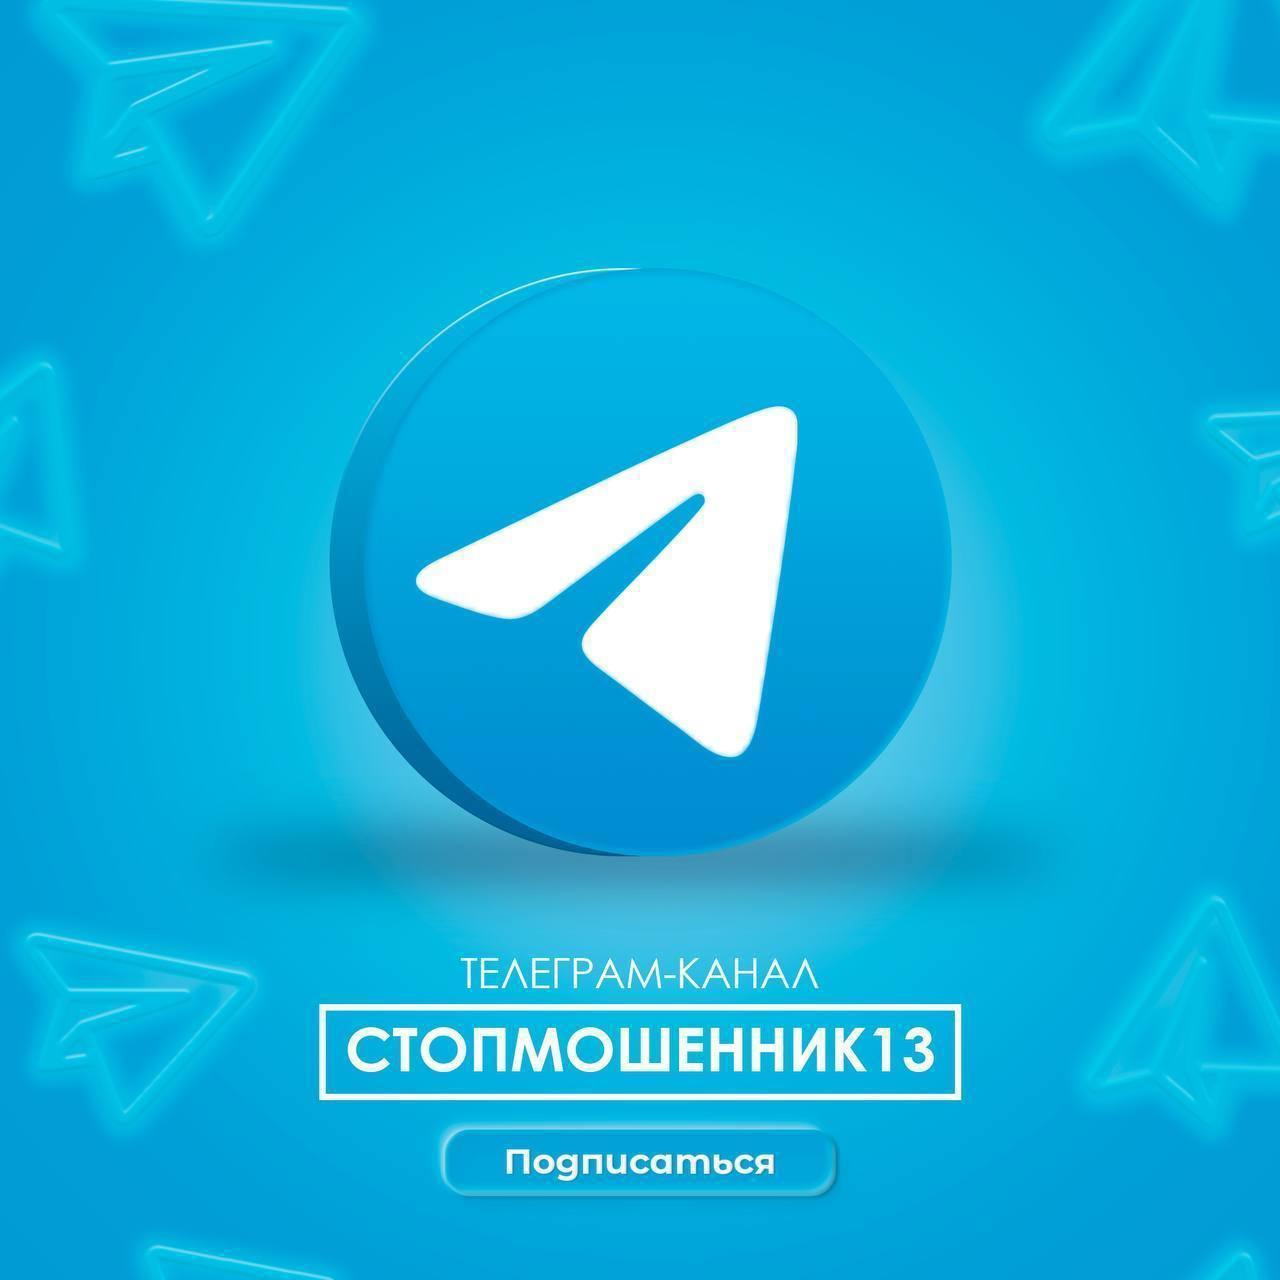 Телеграм-канал «Стопмошенник13».